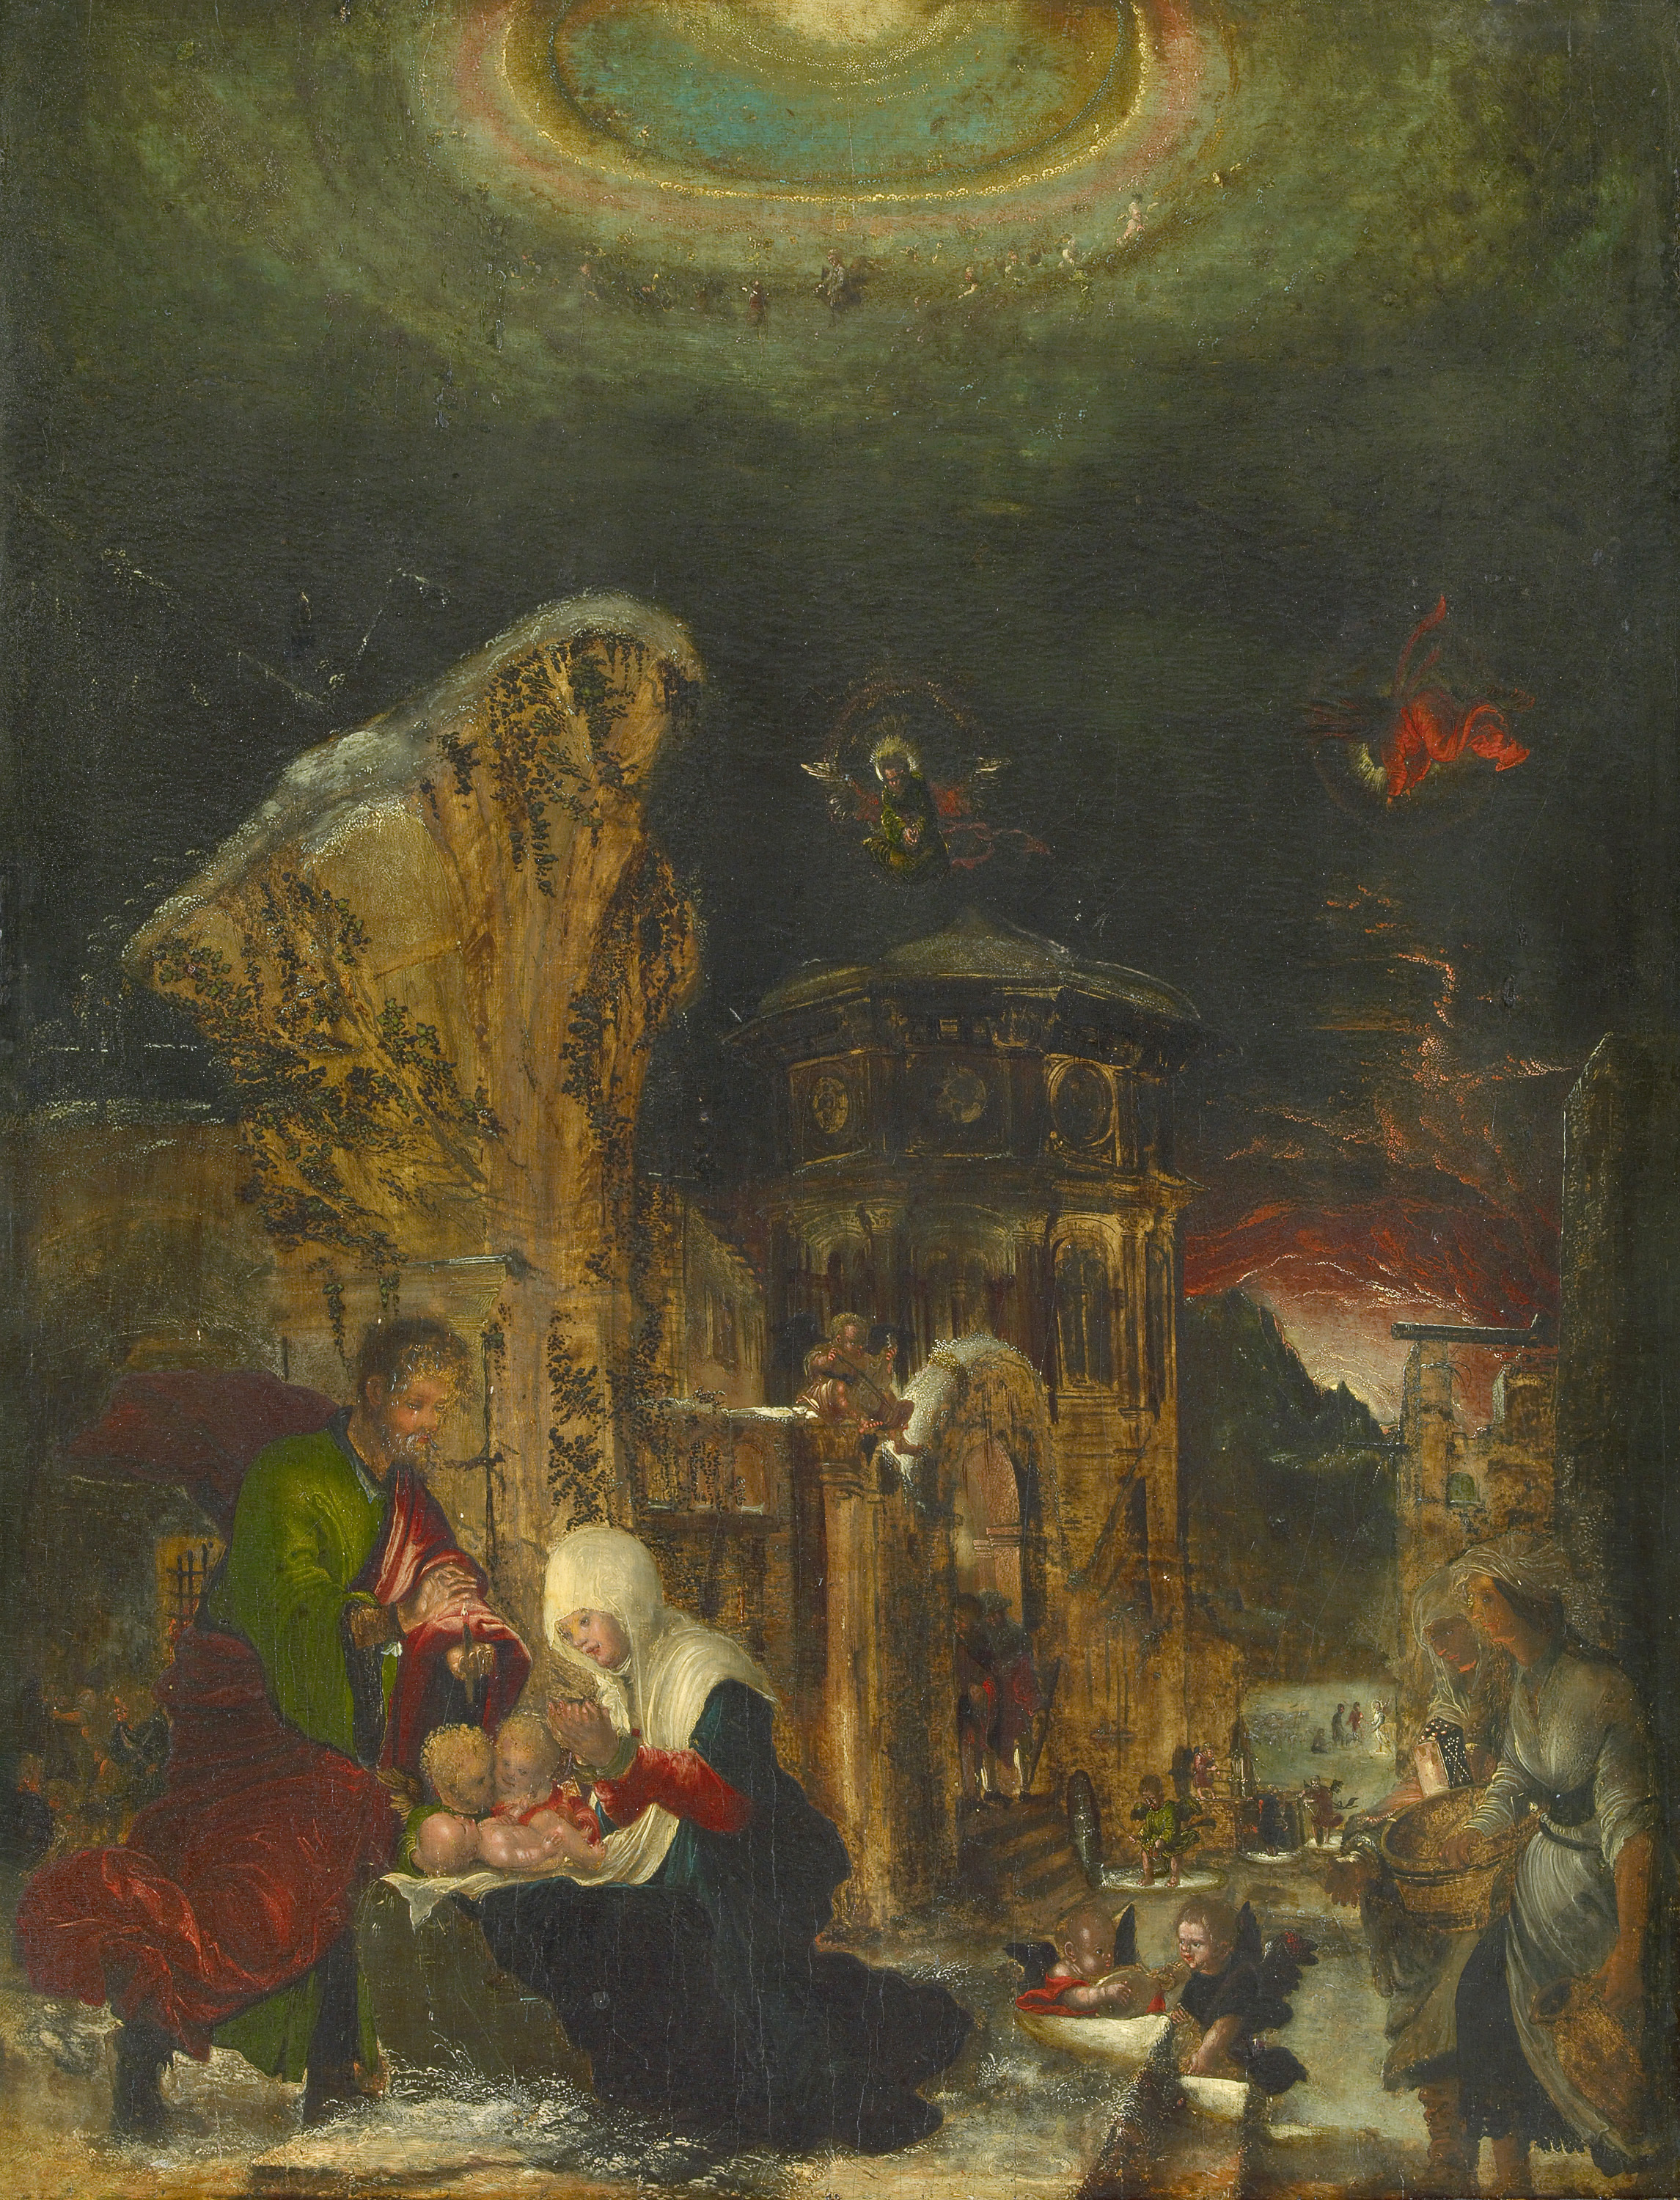 El nacimiento de Cristo by Albrecht Altdorfer - hacia 1520/25 - 44,5 x 36,1 cm Kunsthistorisches Museum